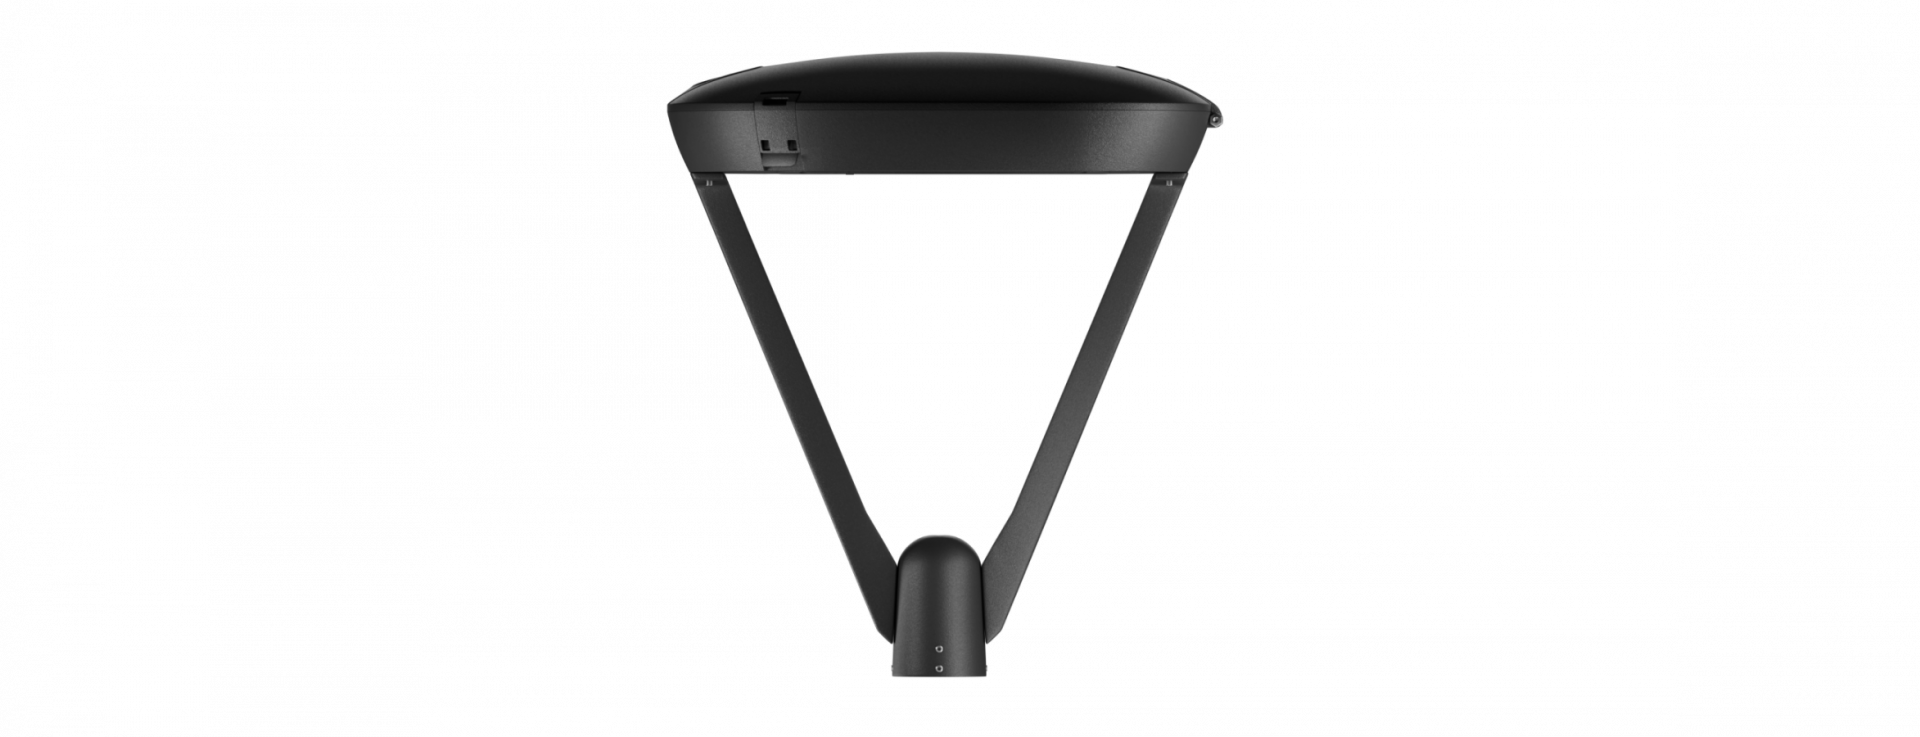 iCON V2. Купить LED светильники iCON RADUGA от производителя. Заказать ландшафтный светодиодный светильник.